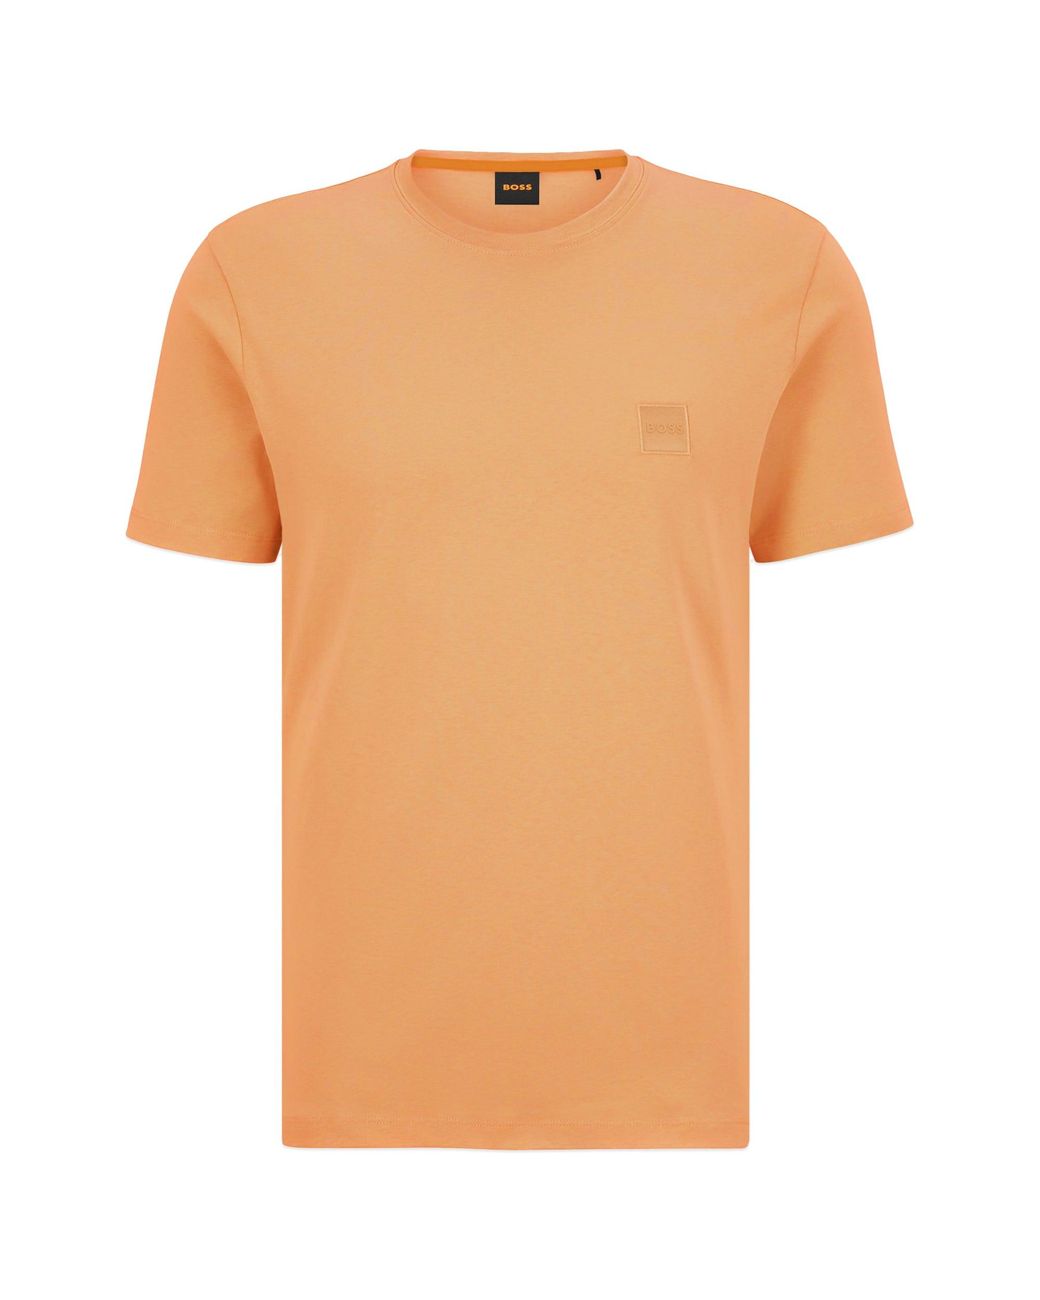 BOSS by HUGO BOSS Lyst Men T-shirt for | Orange Tales in